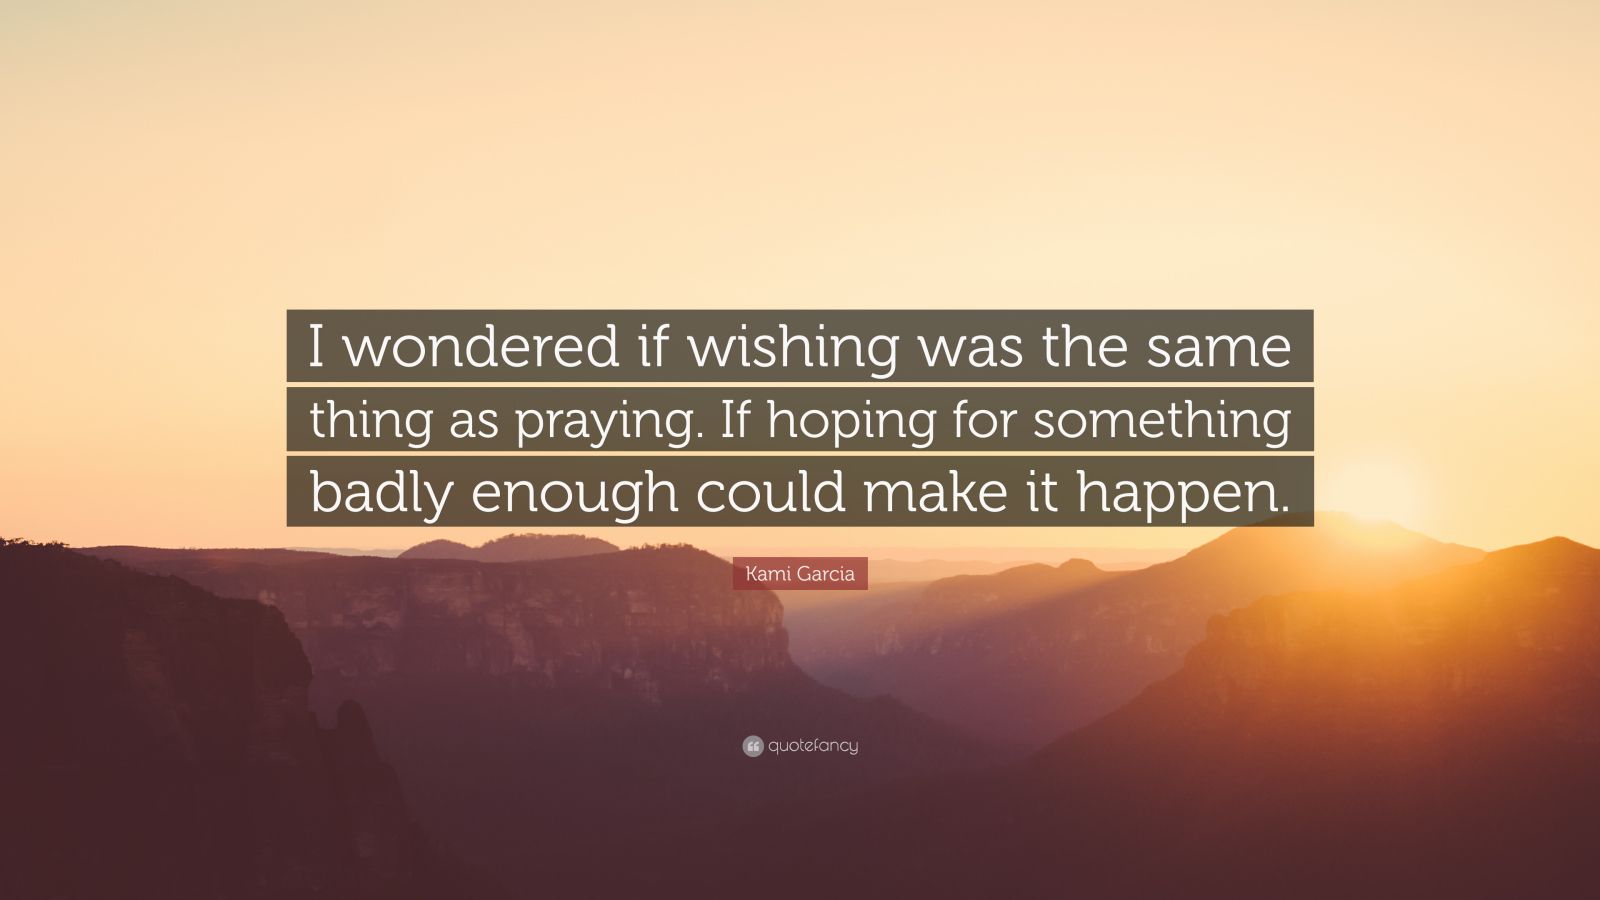 Kami Garcia Quote: “I wondered if wishing was the same thing as praying ...